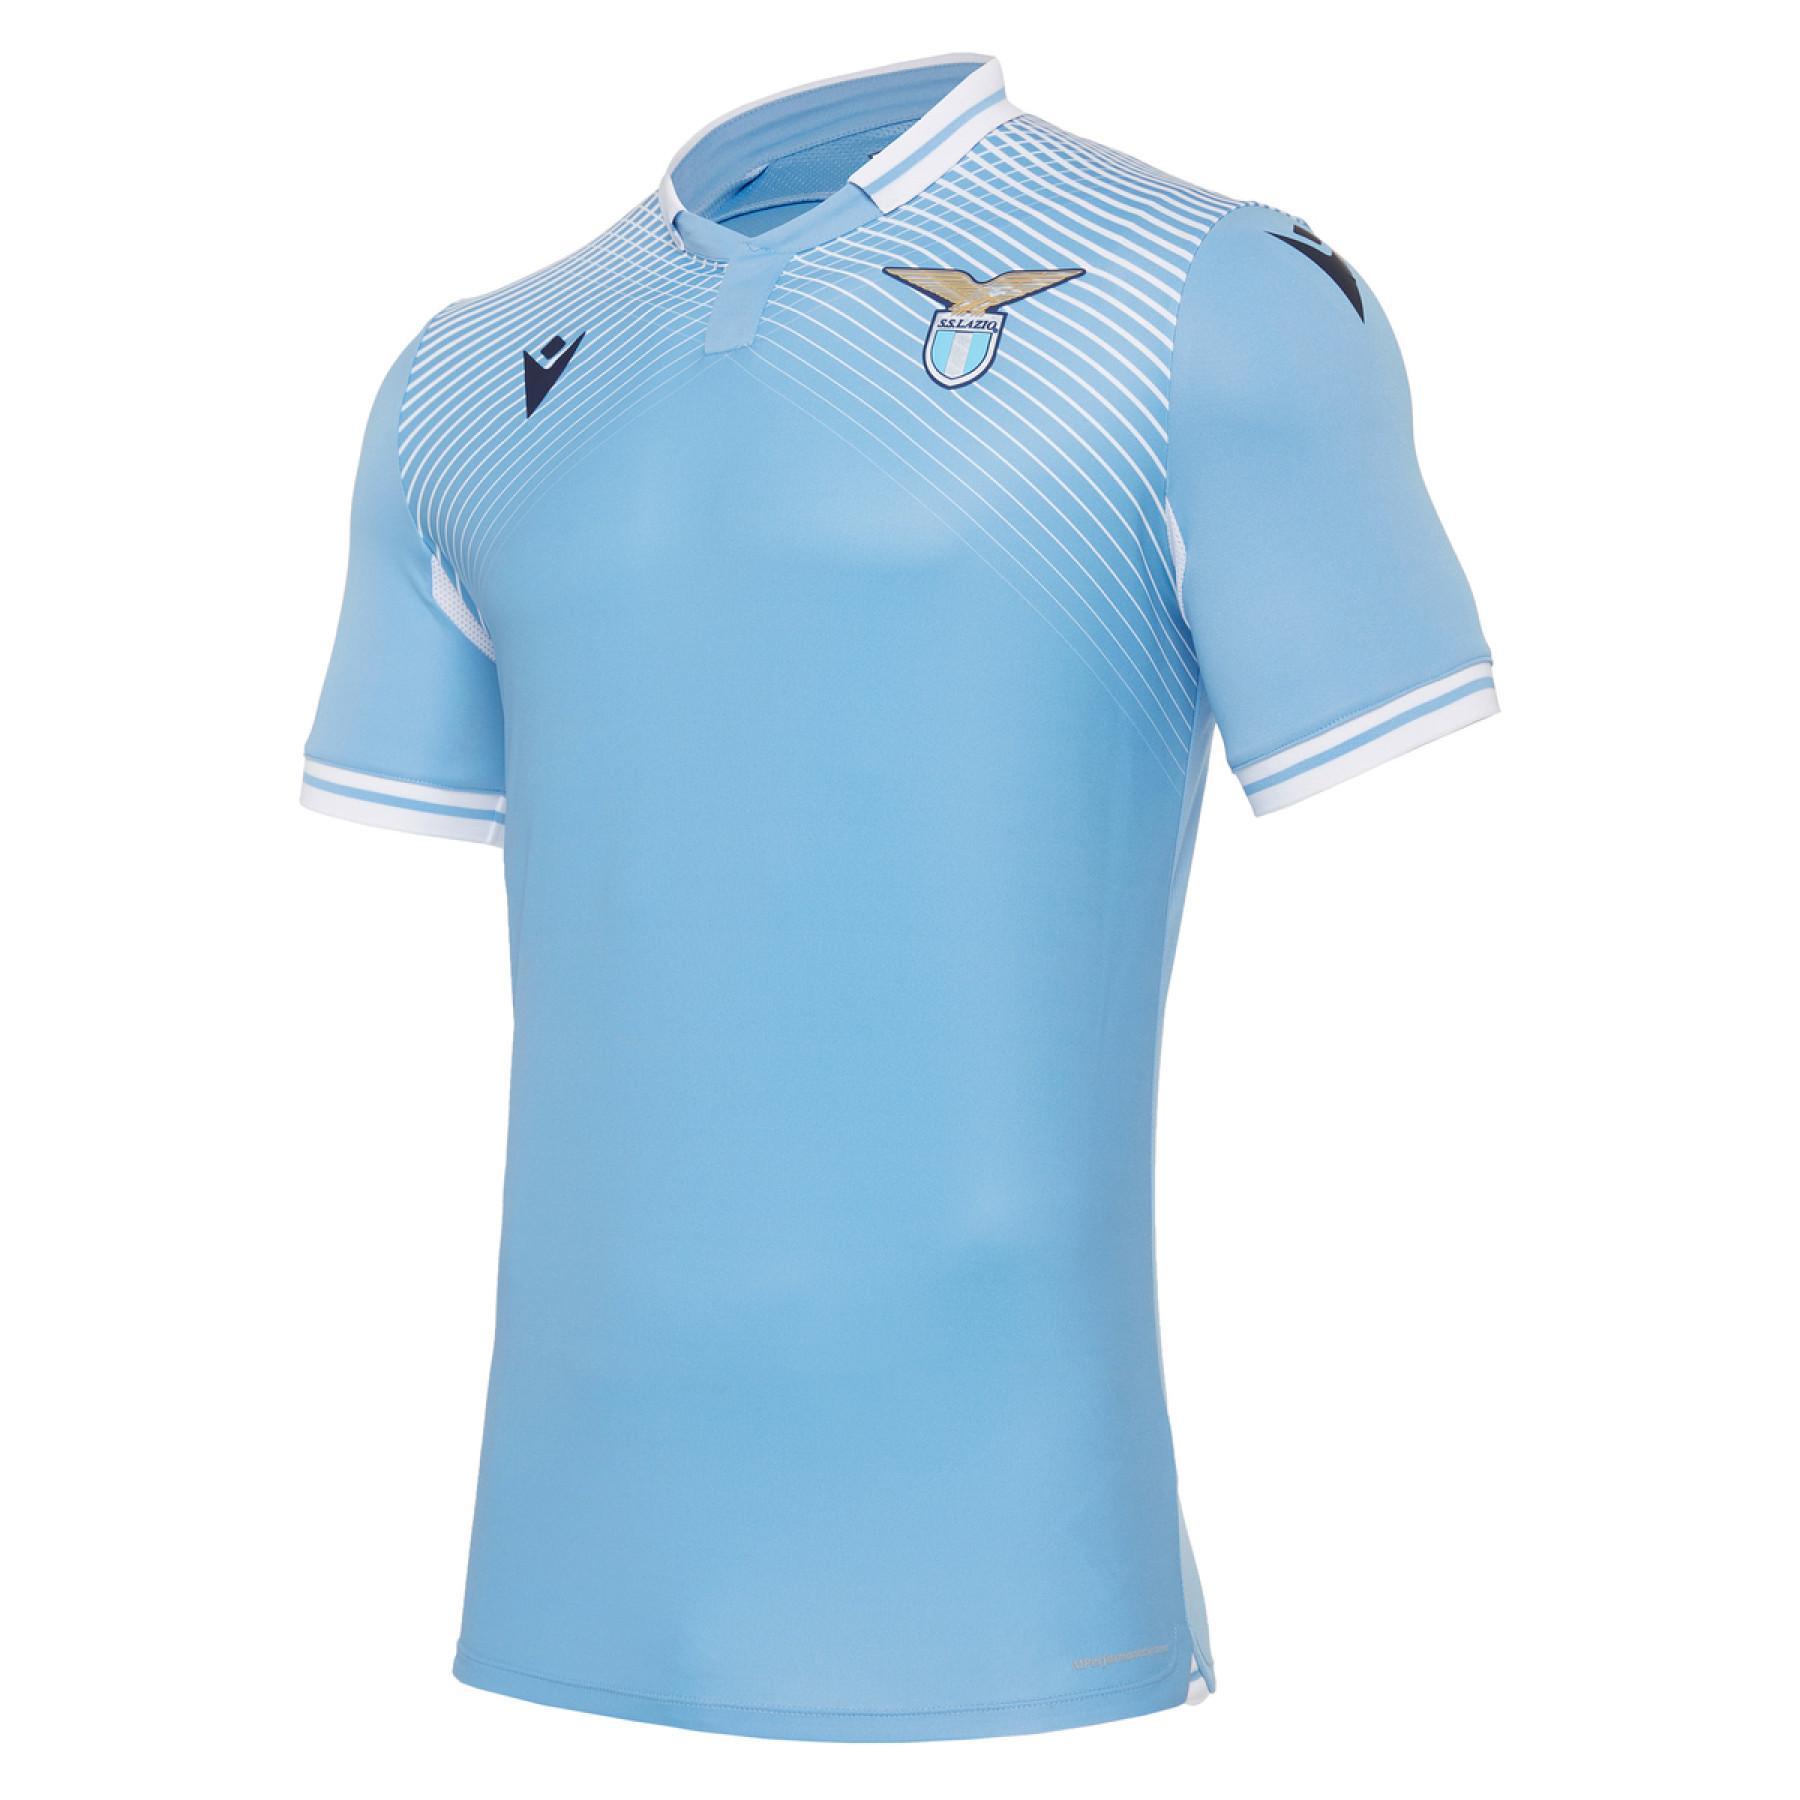 Home jersey Lazio Rome 2020/21